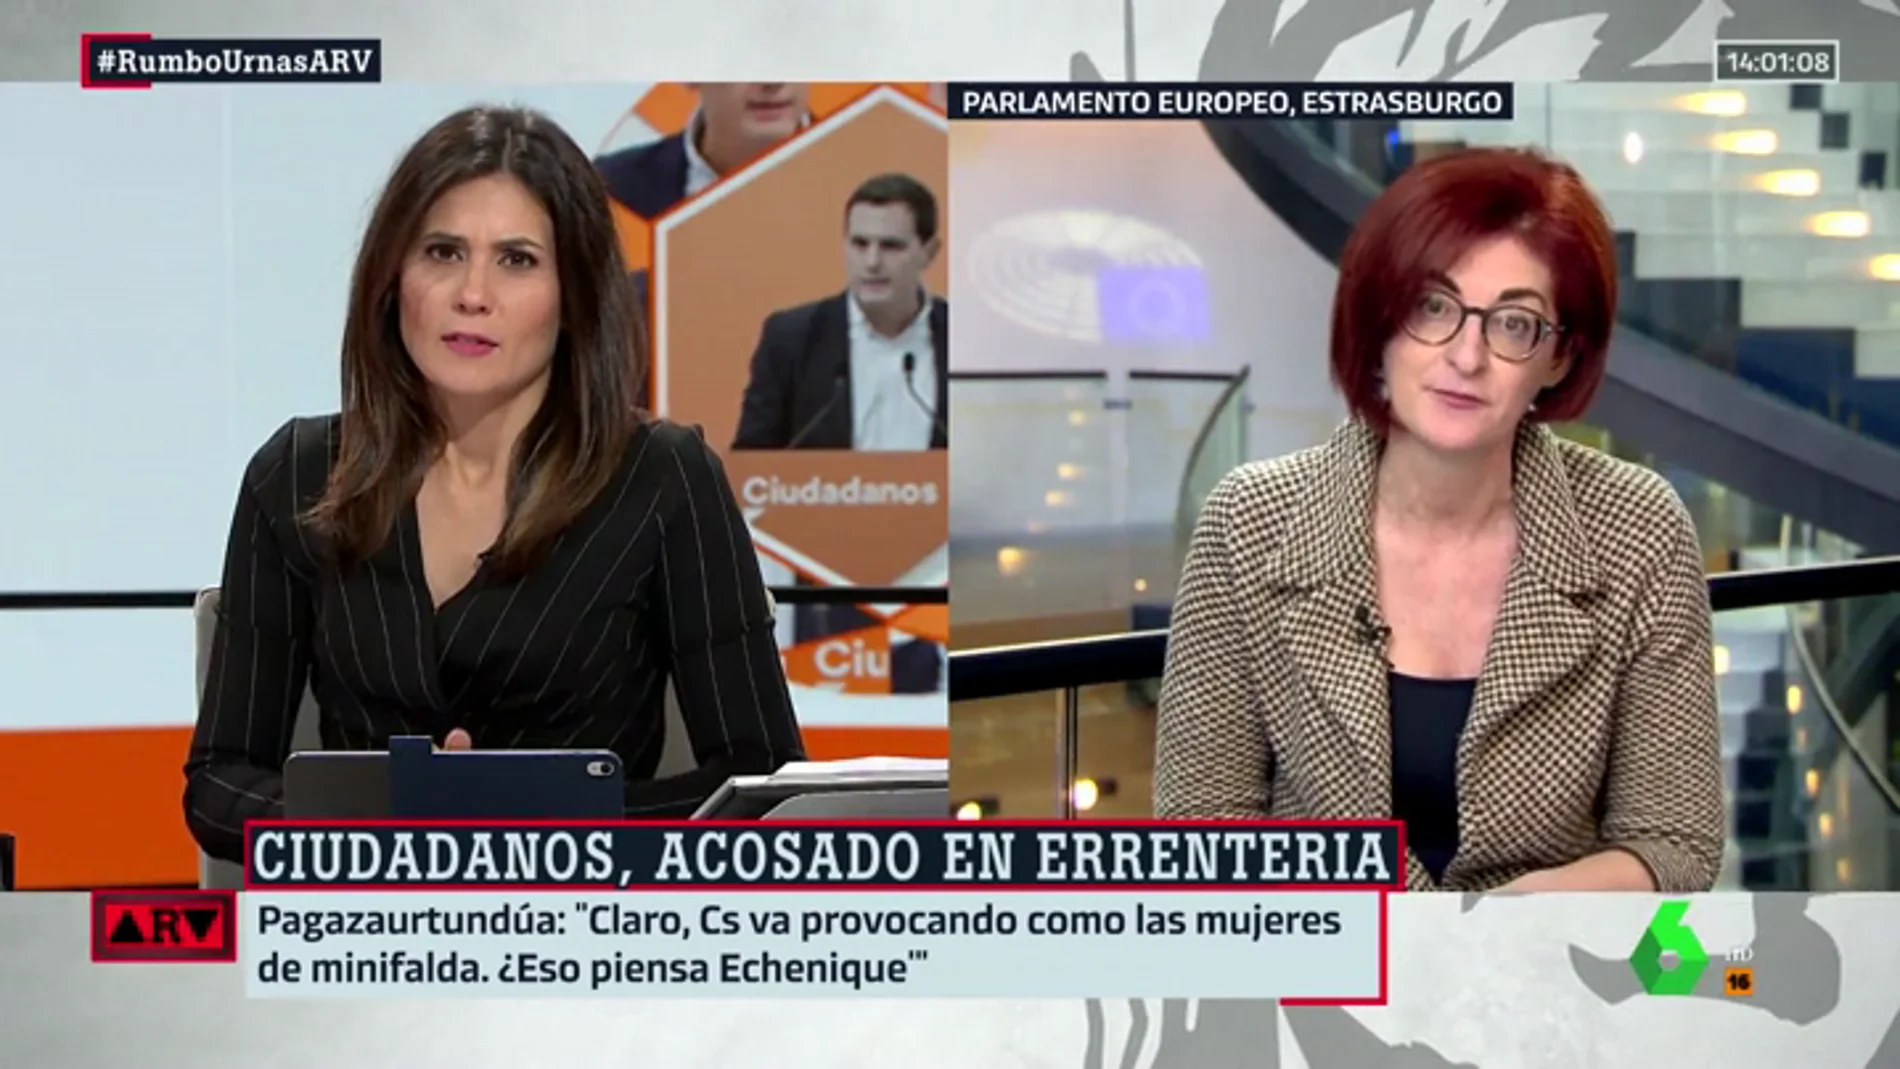 Maite Pagazaurtundüa, sobre lo ocurrido en Errenteria: "¿No tenemos derecho a reivindicar nuestra manera de hacer política?"